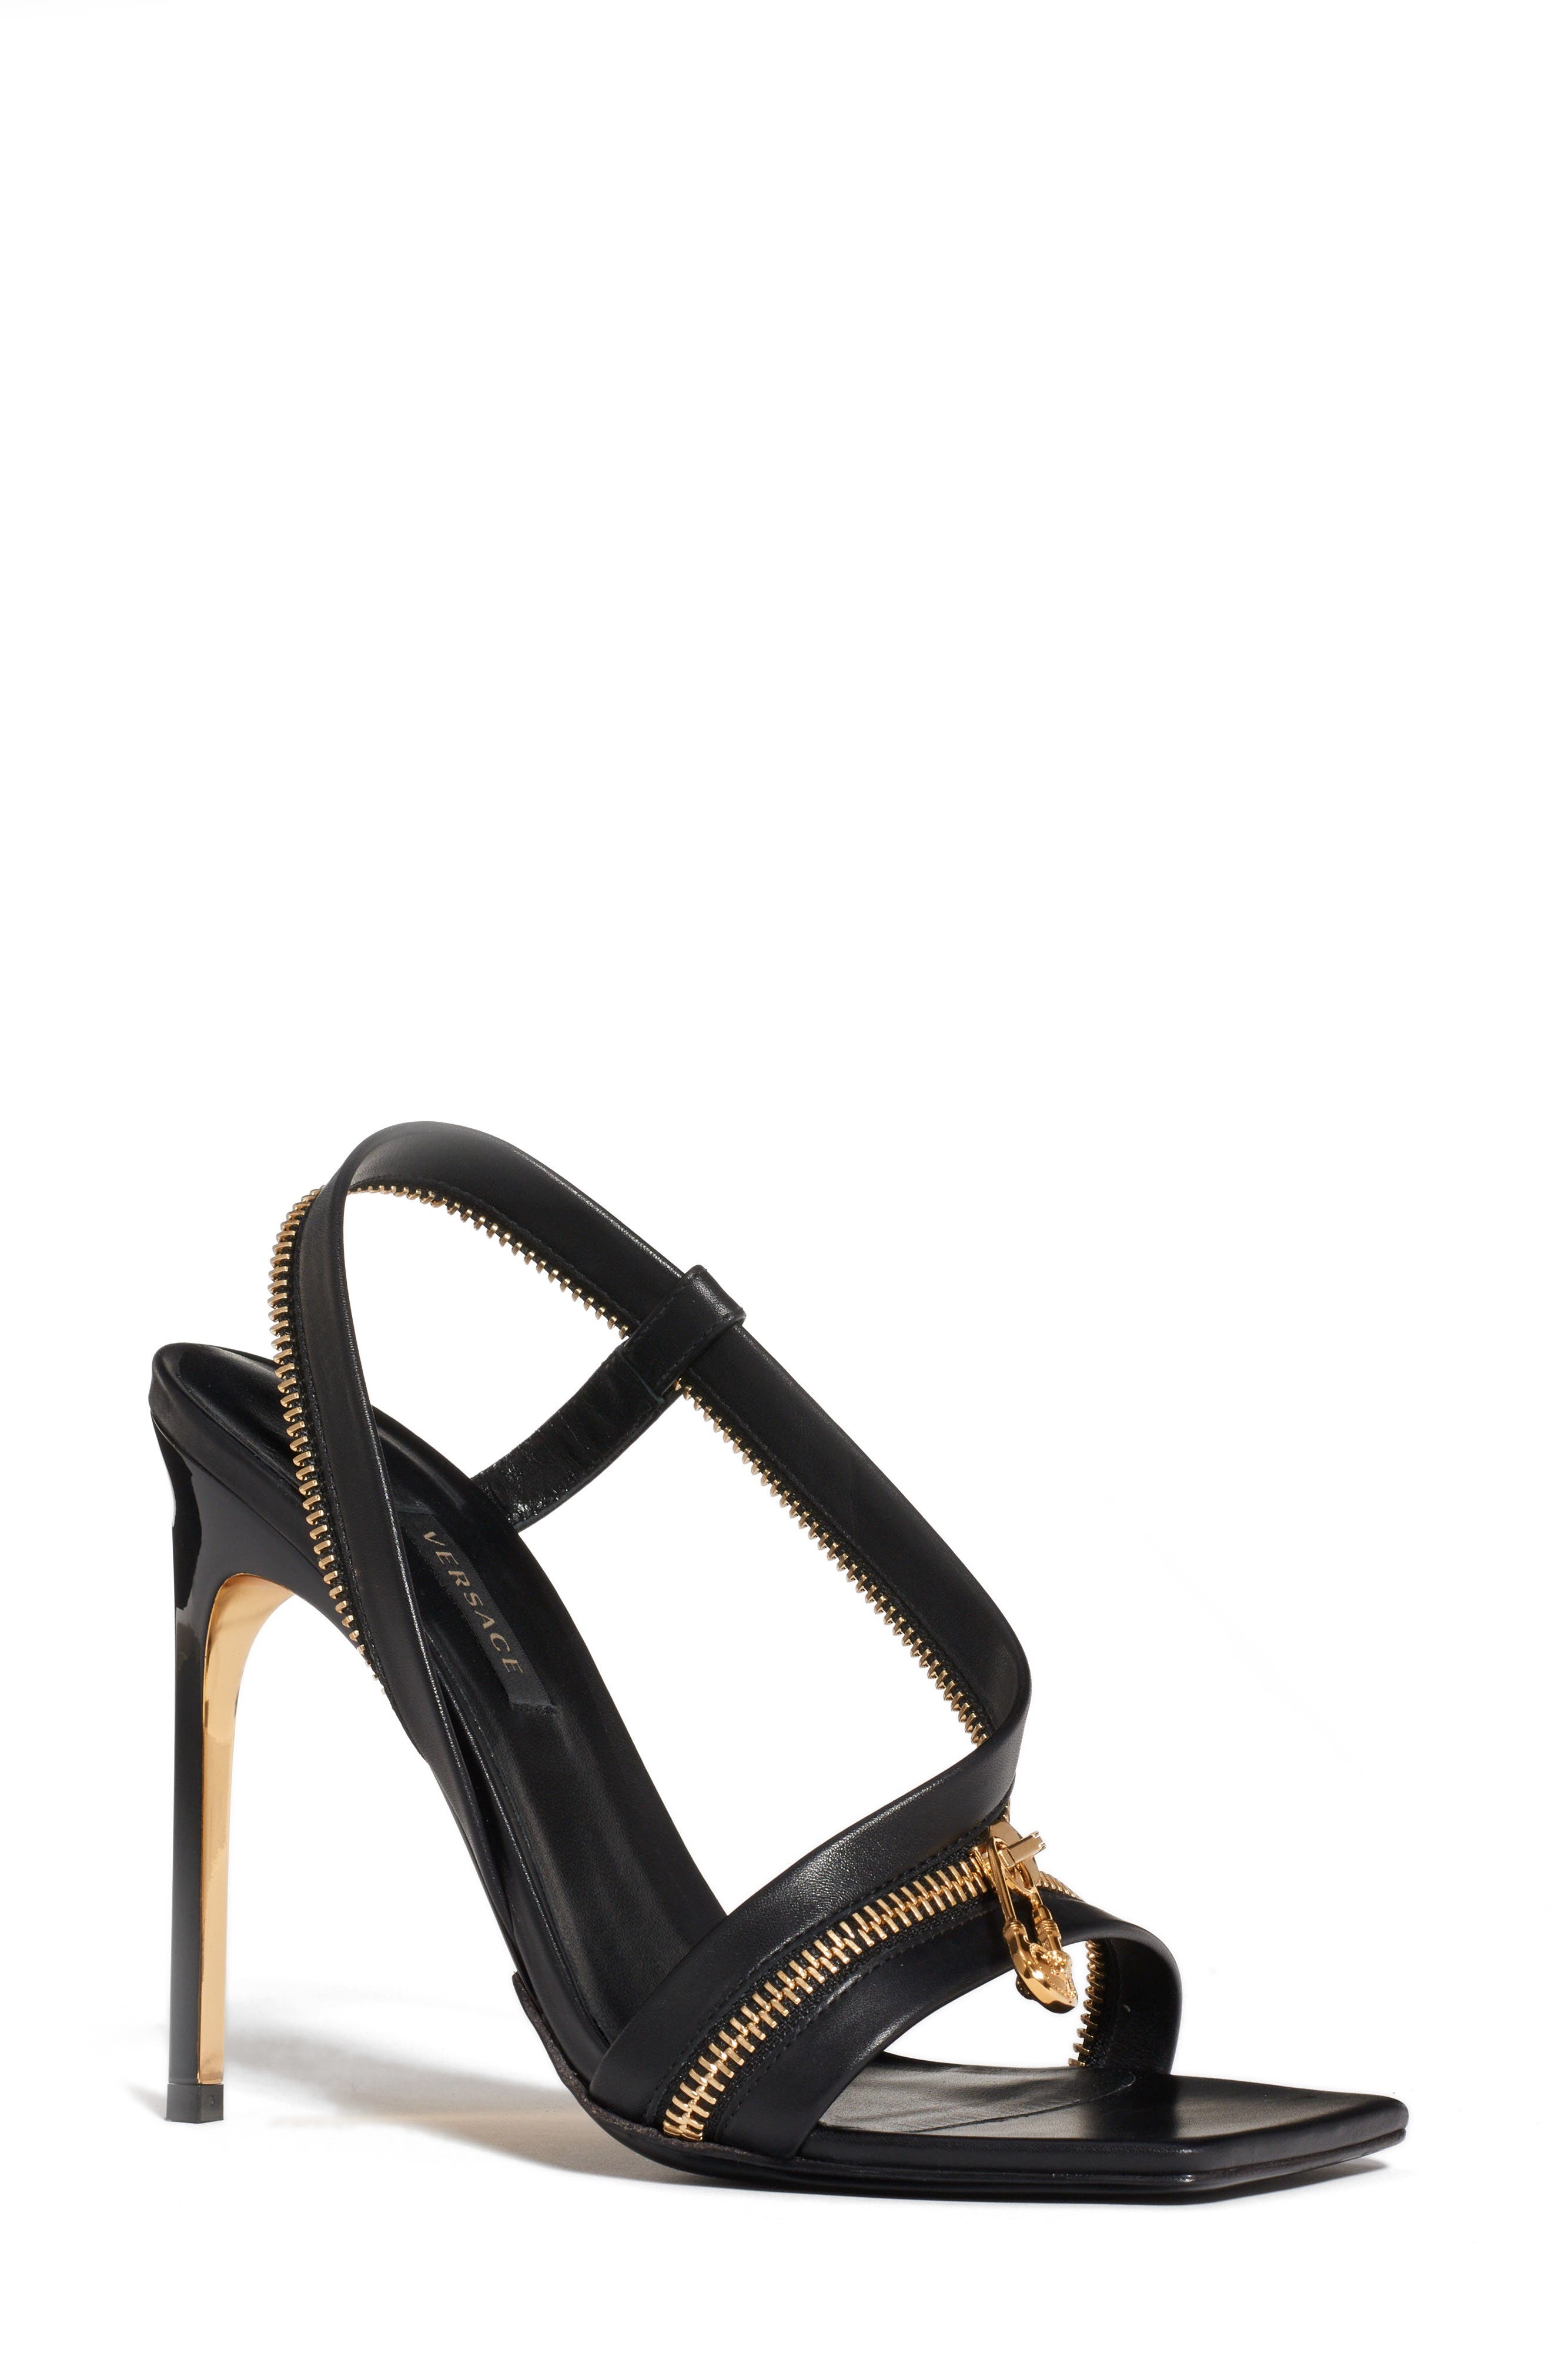 versace womens heels